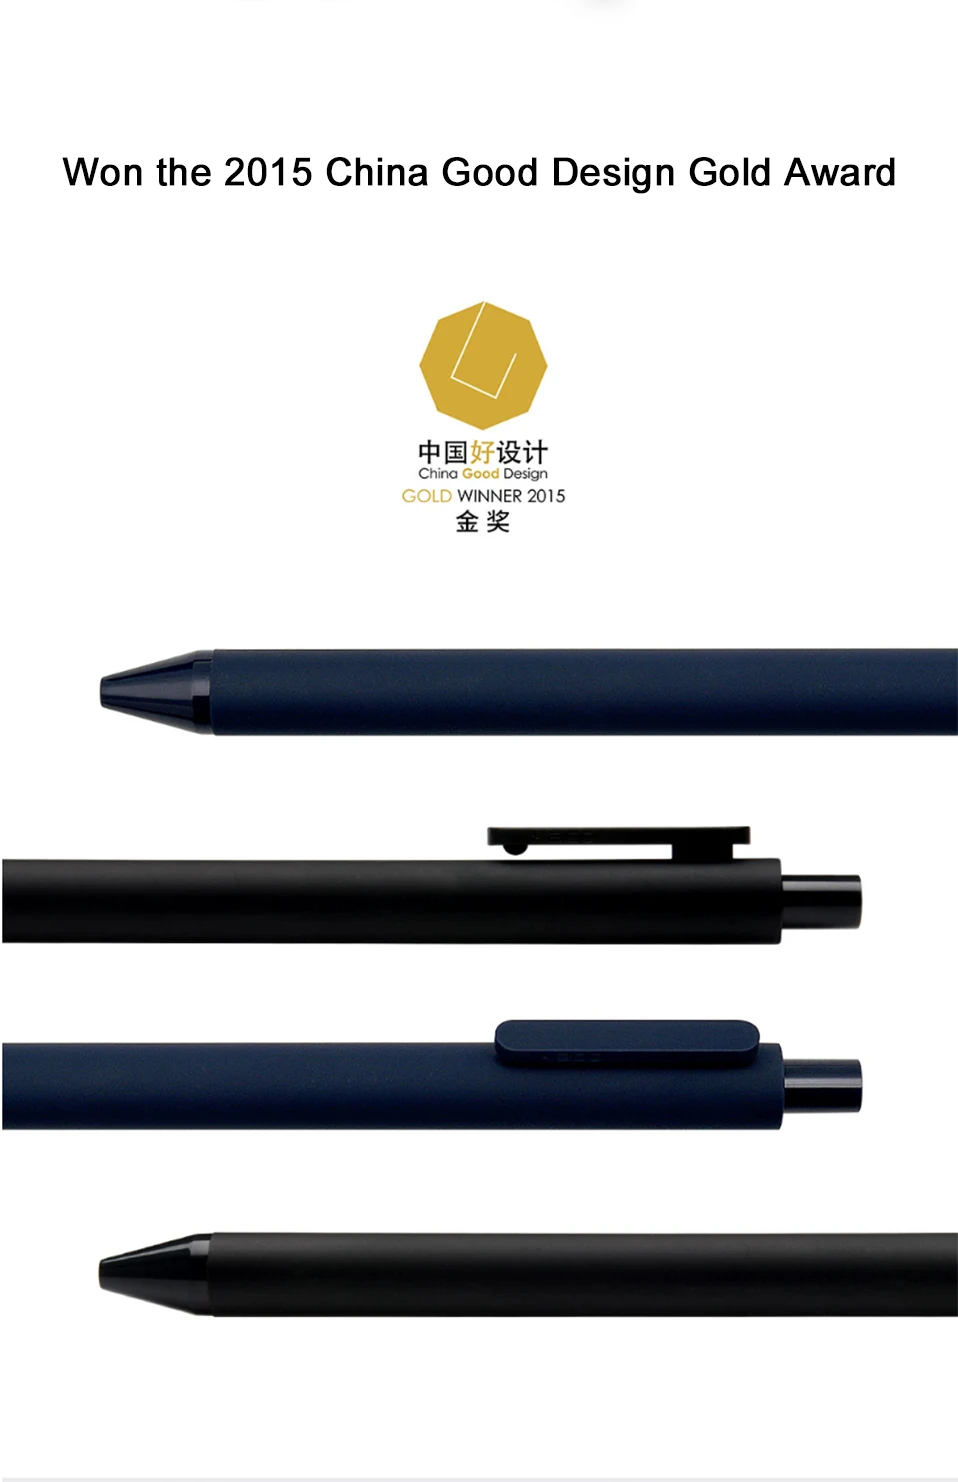 10 шт./лот,, Xiao mi KACO, 0,5 мм, Xio mi, ручка для подписи, Gal, чернила для гладкого письма, прочные принадлежности для письма, черный цвет, заправка